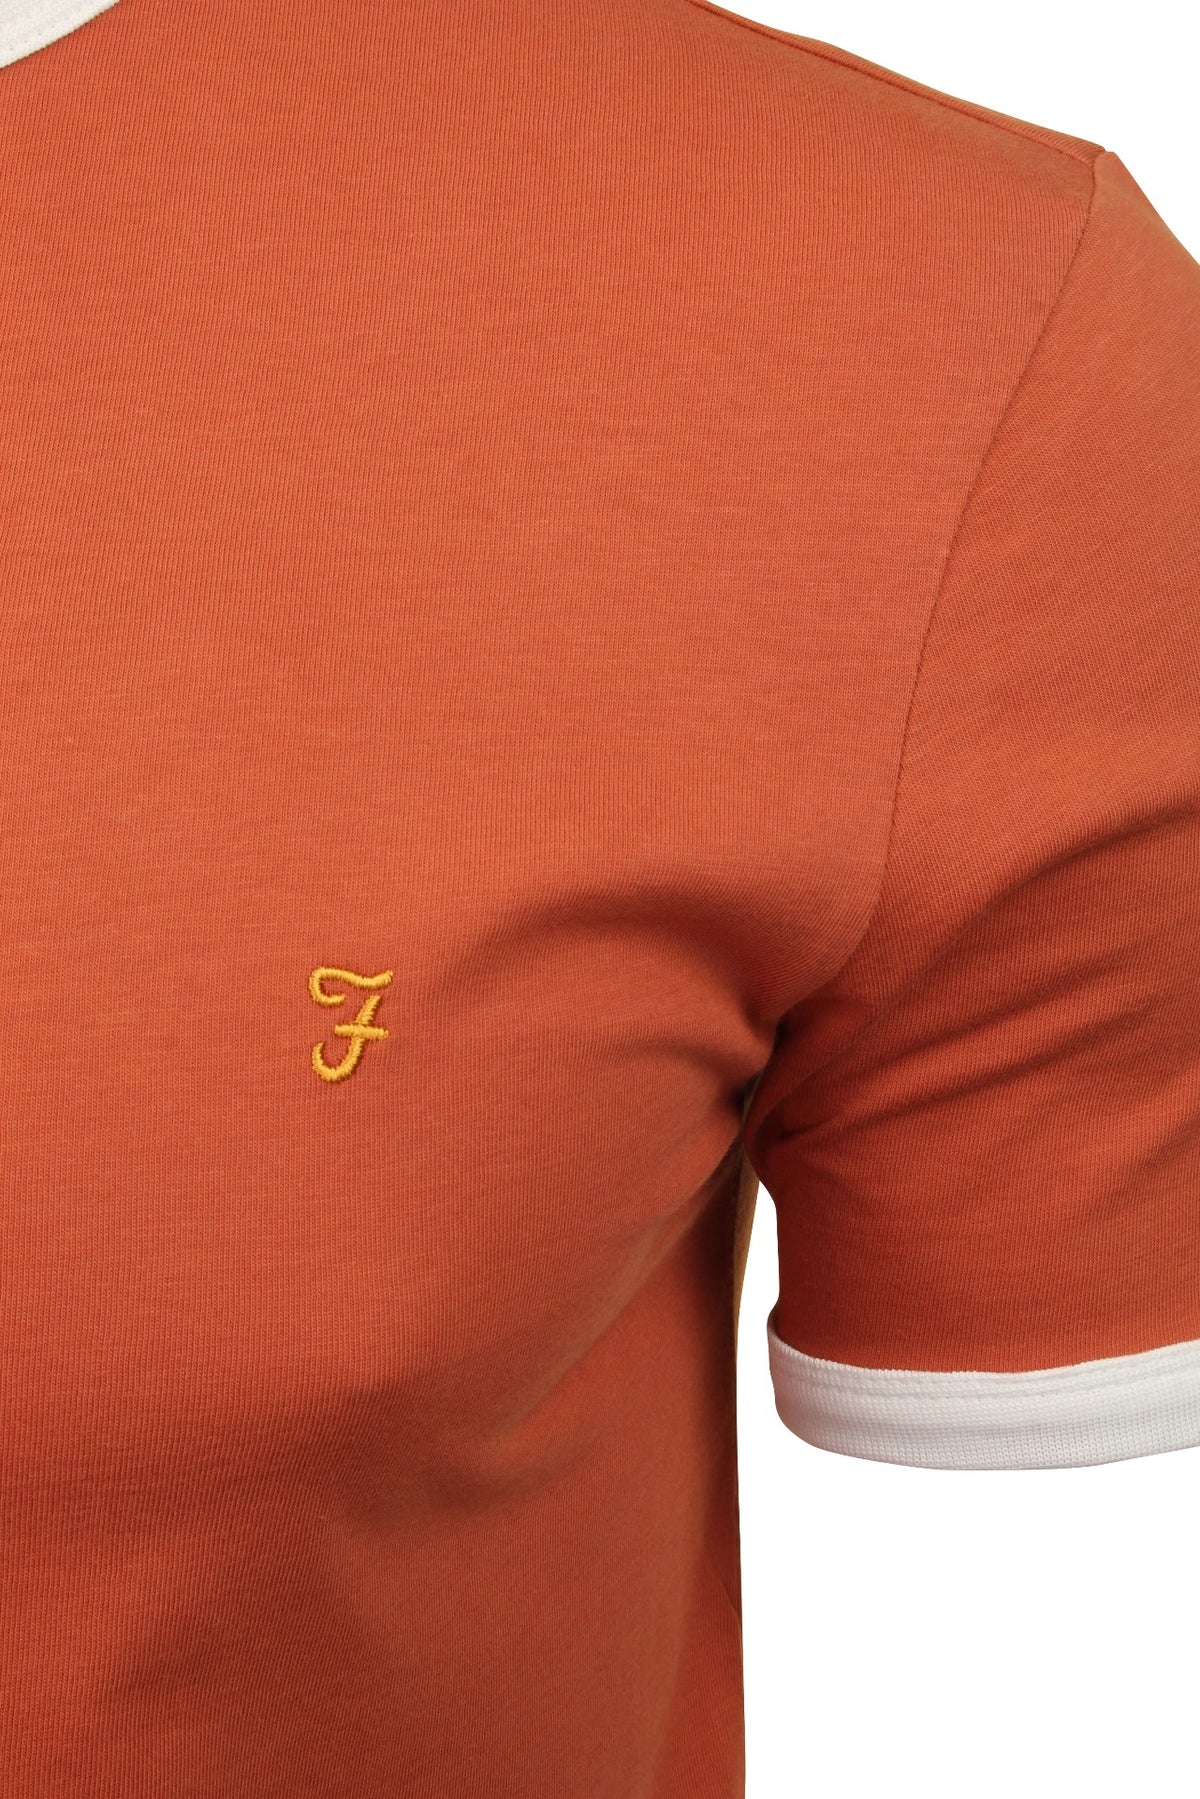 Farah Mens Crew Neck T-Shirt 'Groves Ringer Tee' - Short Sleeved, 02, F4KS60H9GP, Jalapeno